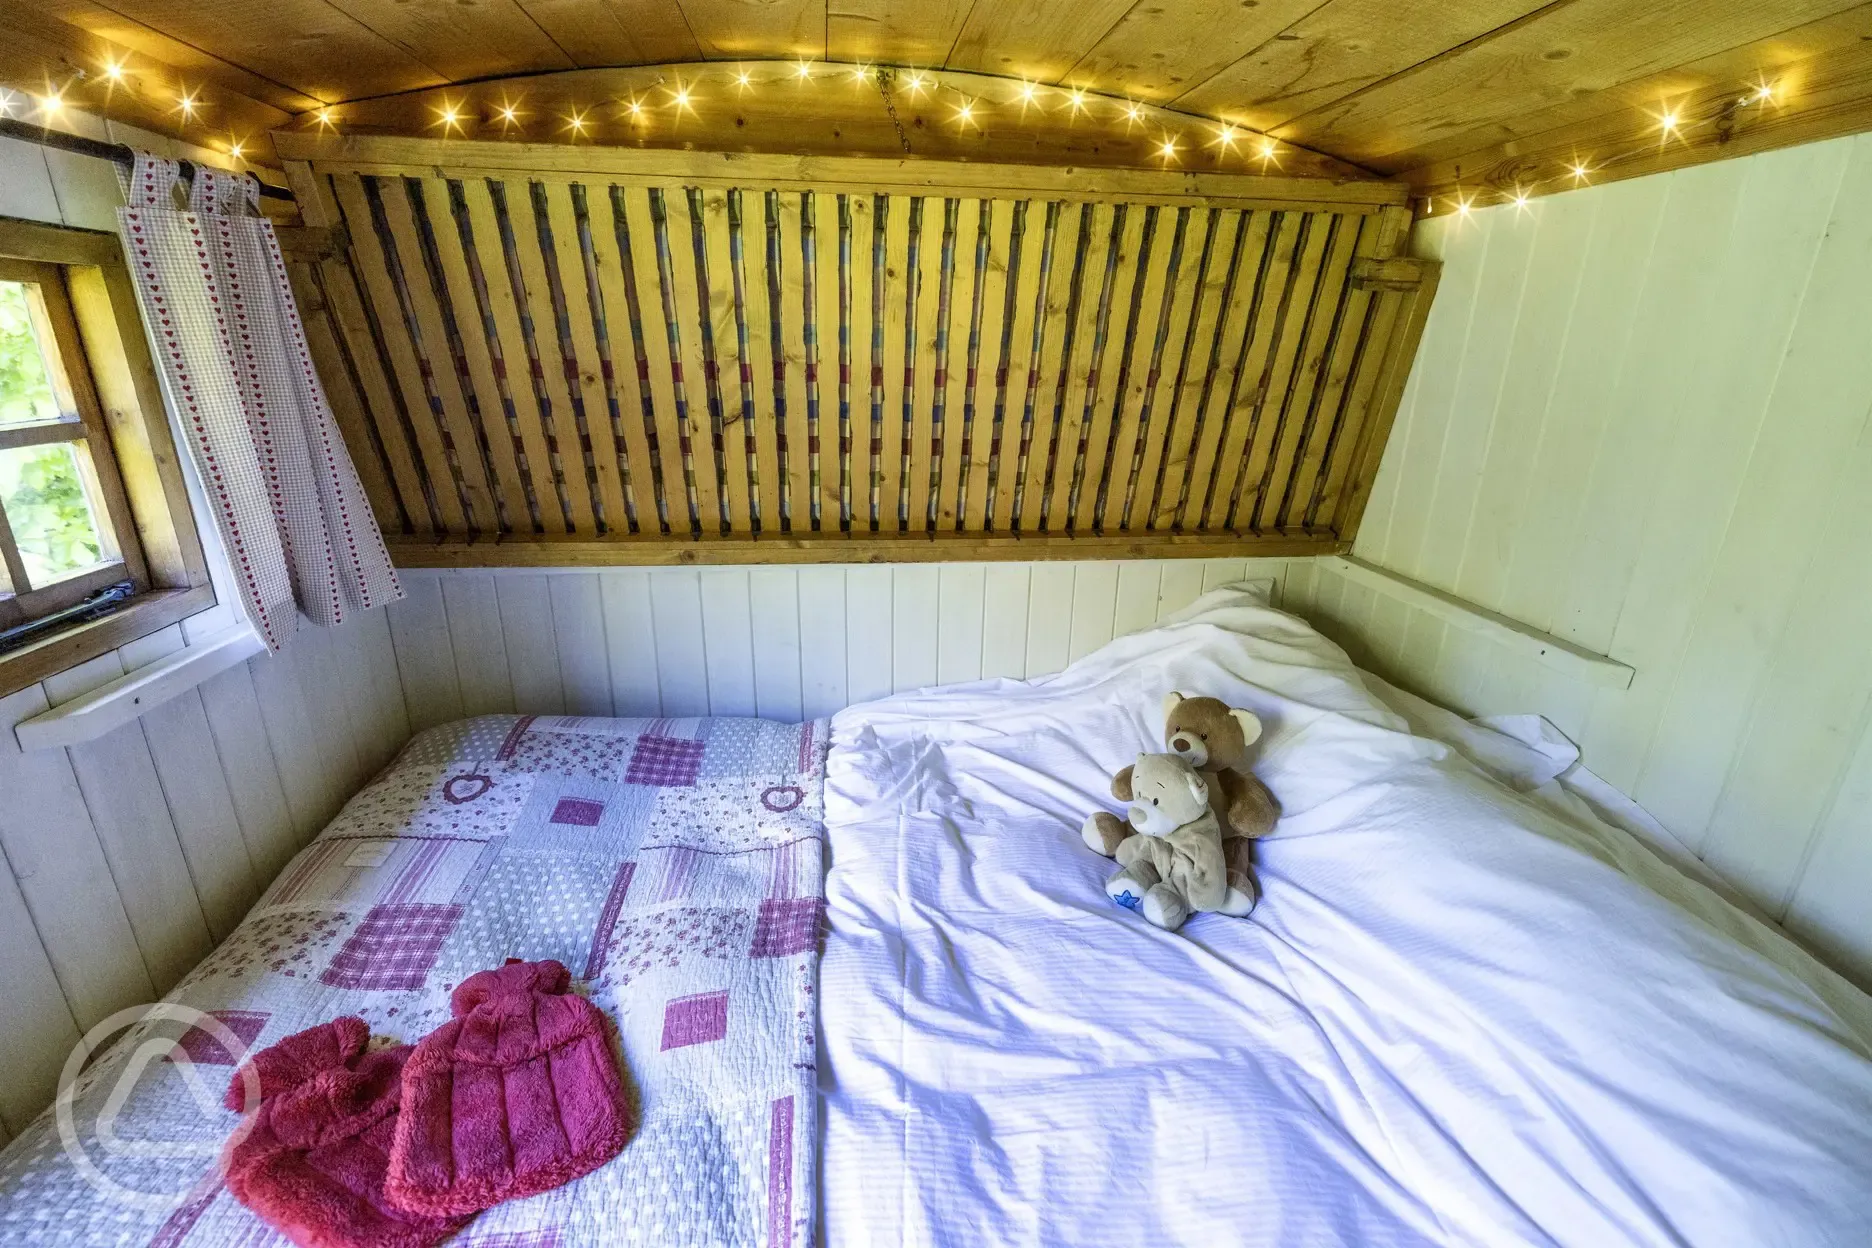 Shepherd's hut bed